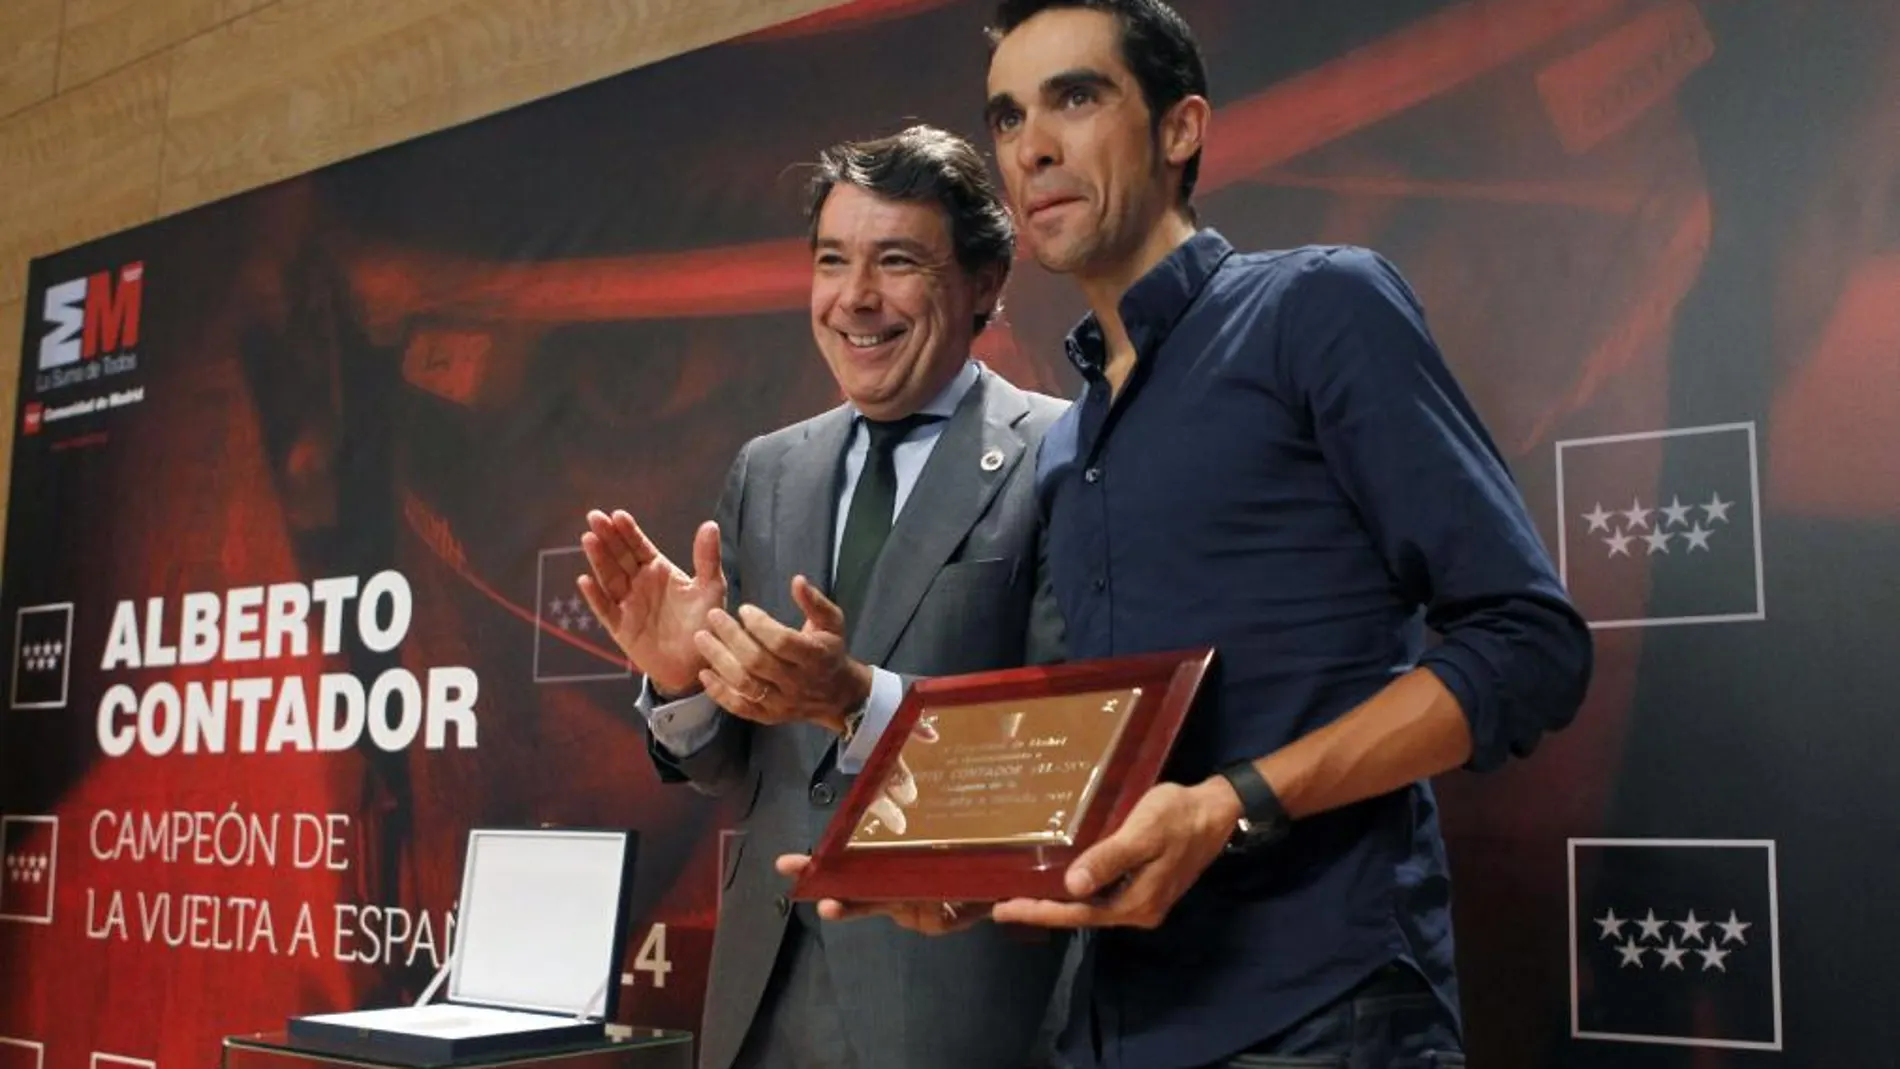 El ciclista Alberto Contador, campeón de la Vuelta a España 2014, ante el presidente de la Comunidad de Madrid, Ignacio González, durante la recepción celebrada esta tarde en la Real Casa de Correos en Madrid